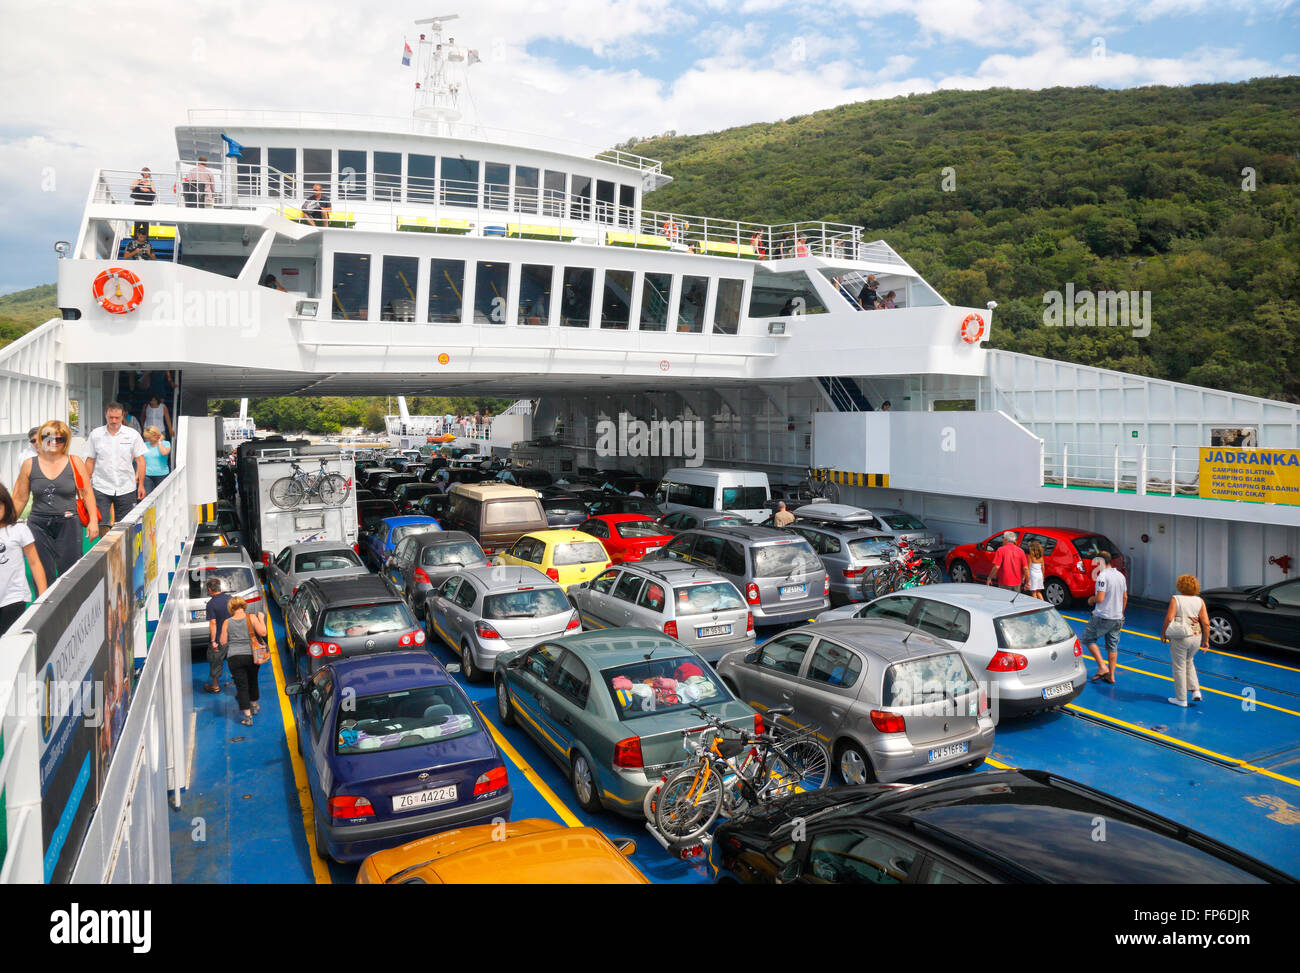 Überfüllte Fähre voller Autos in der Sommersaison in Kroatien Stockfoto